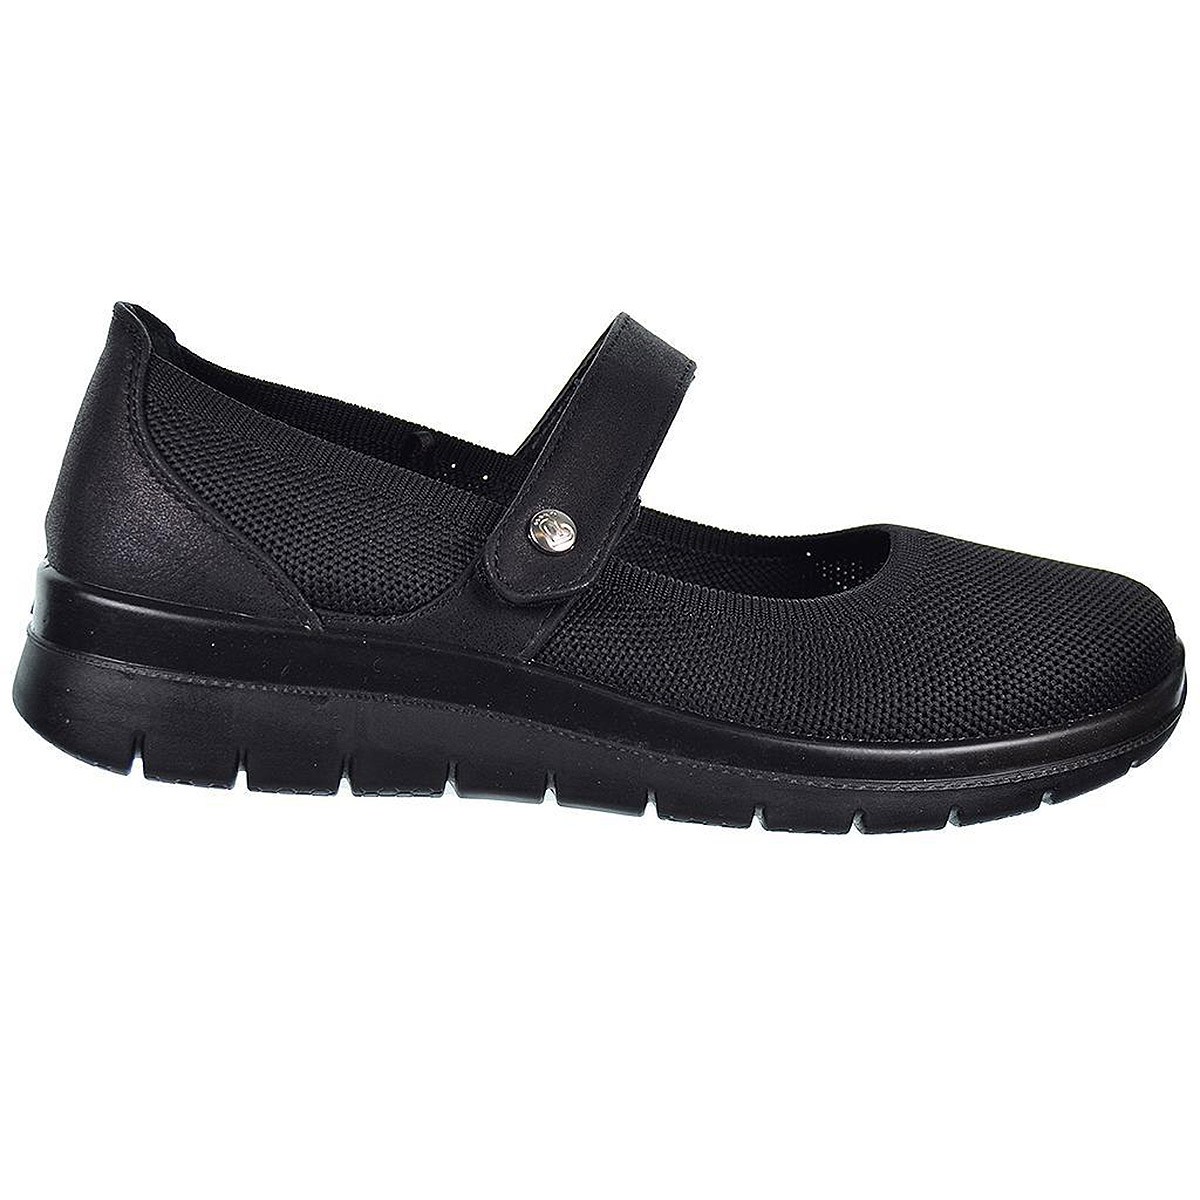 23463 Amarpies Zapato Confort en textil y sintético. Plantilla acolchada. Velcro. Suela de caucho con cuña muy ligera y flexible